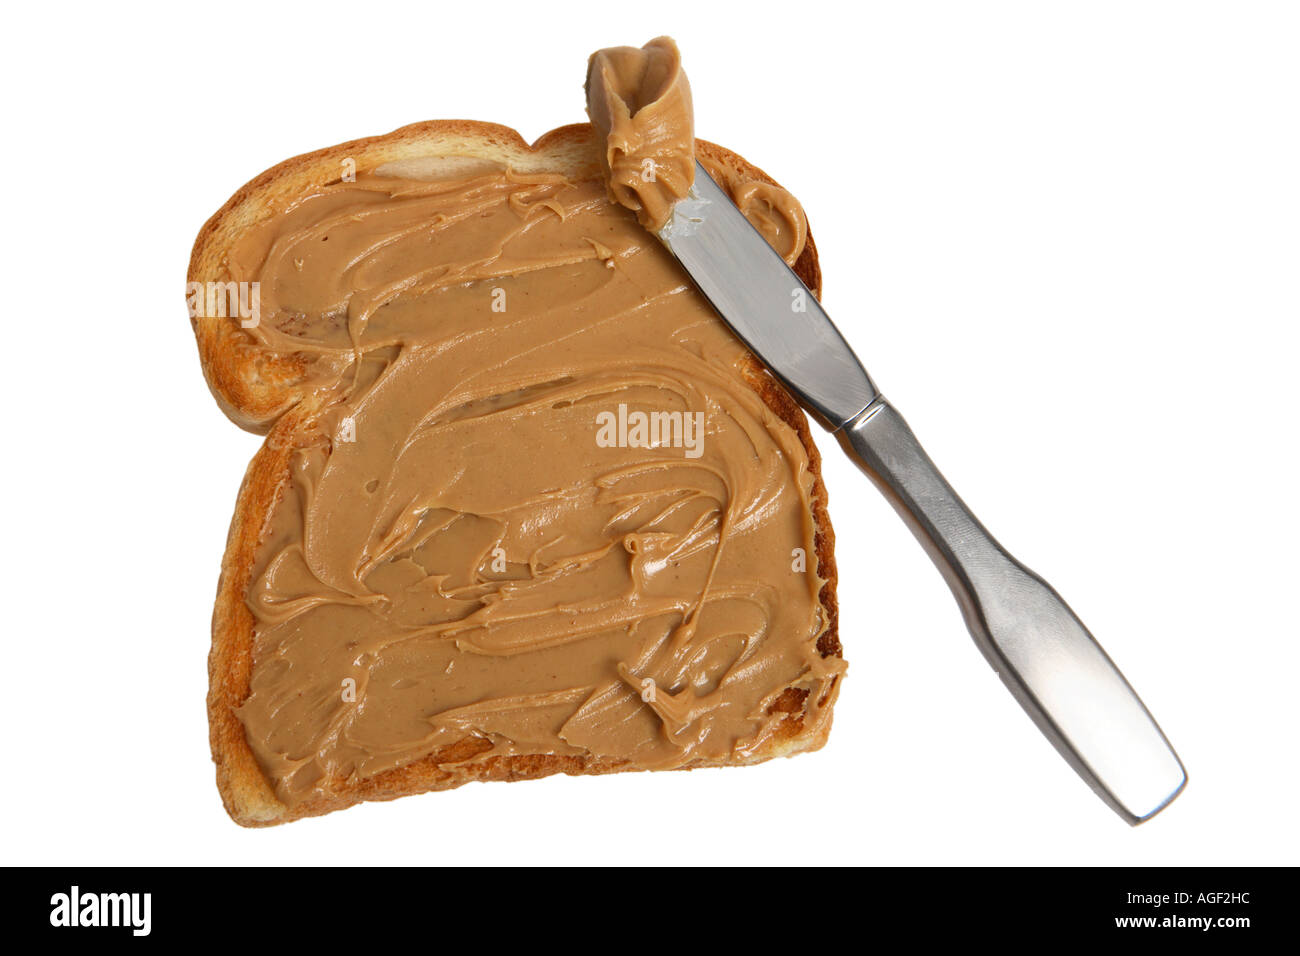 Du pain avec du beurre d'arachide et le couteau Banque D'Images